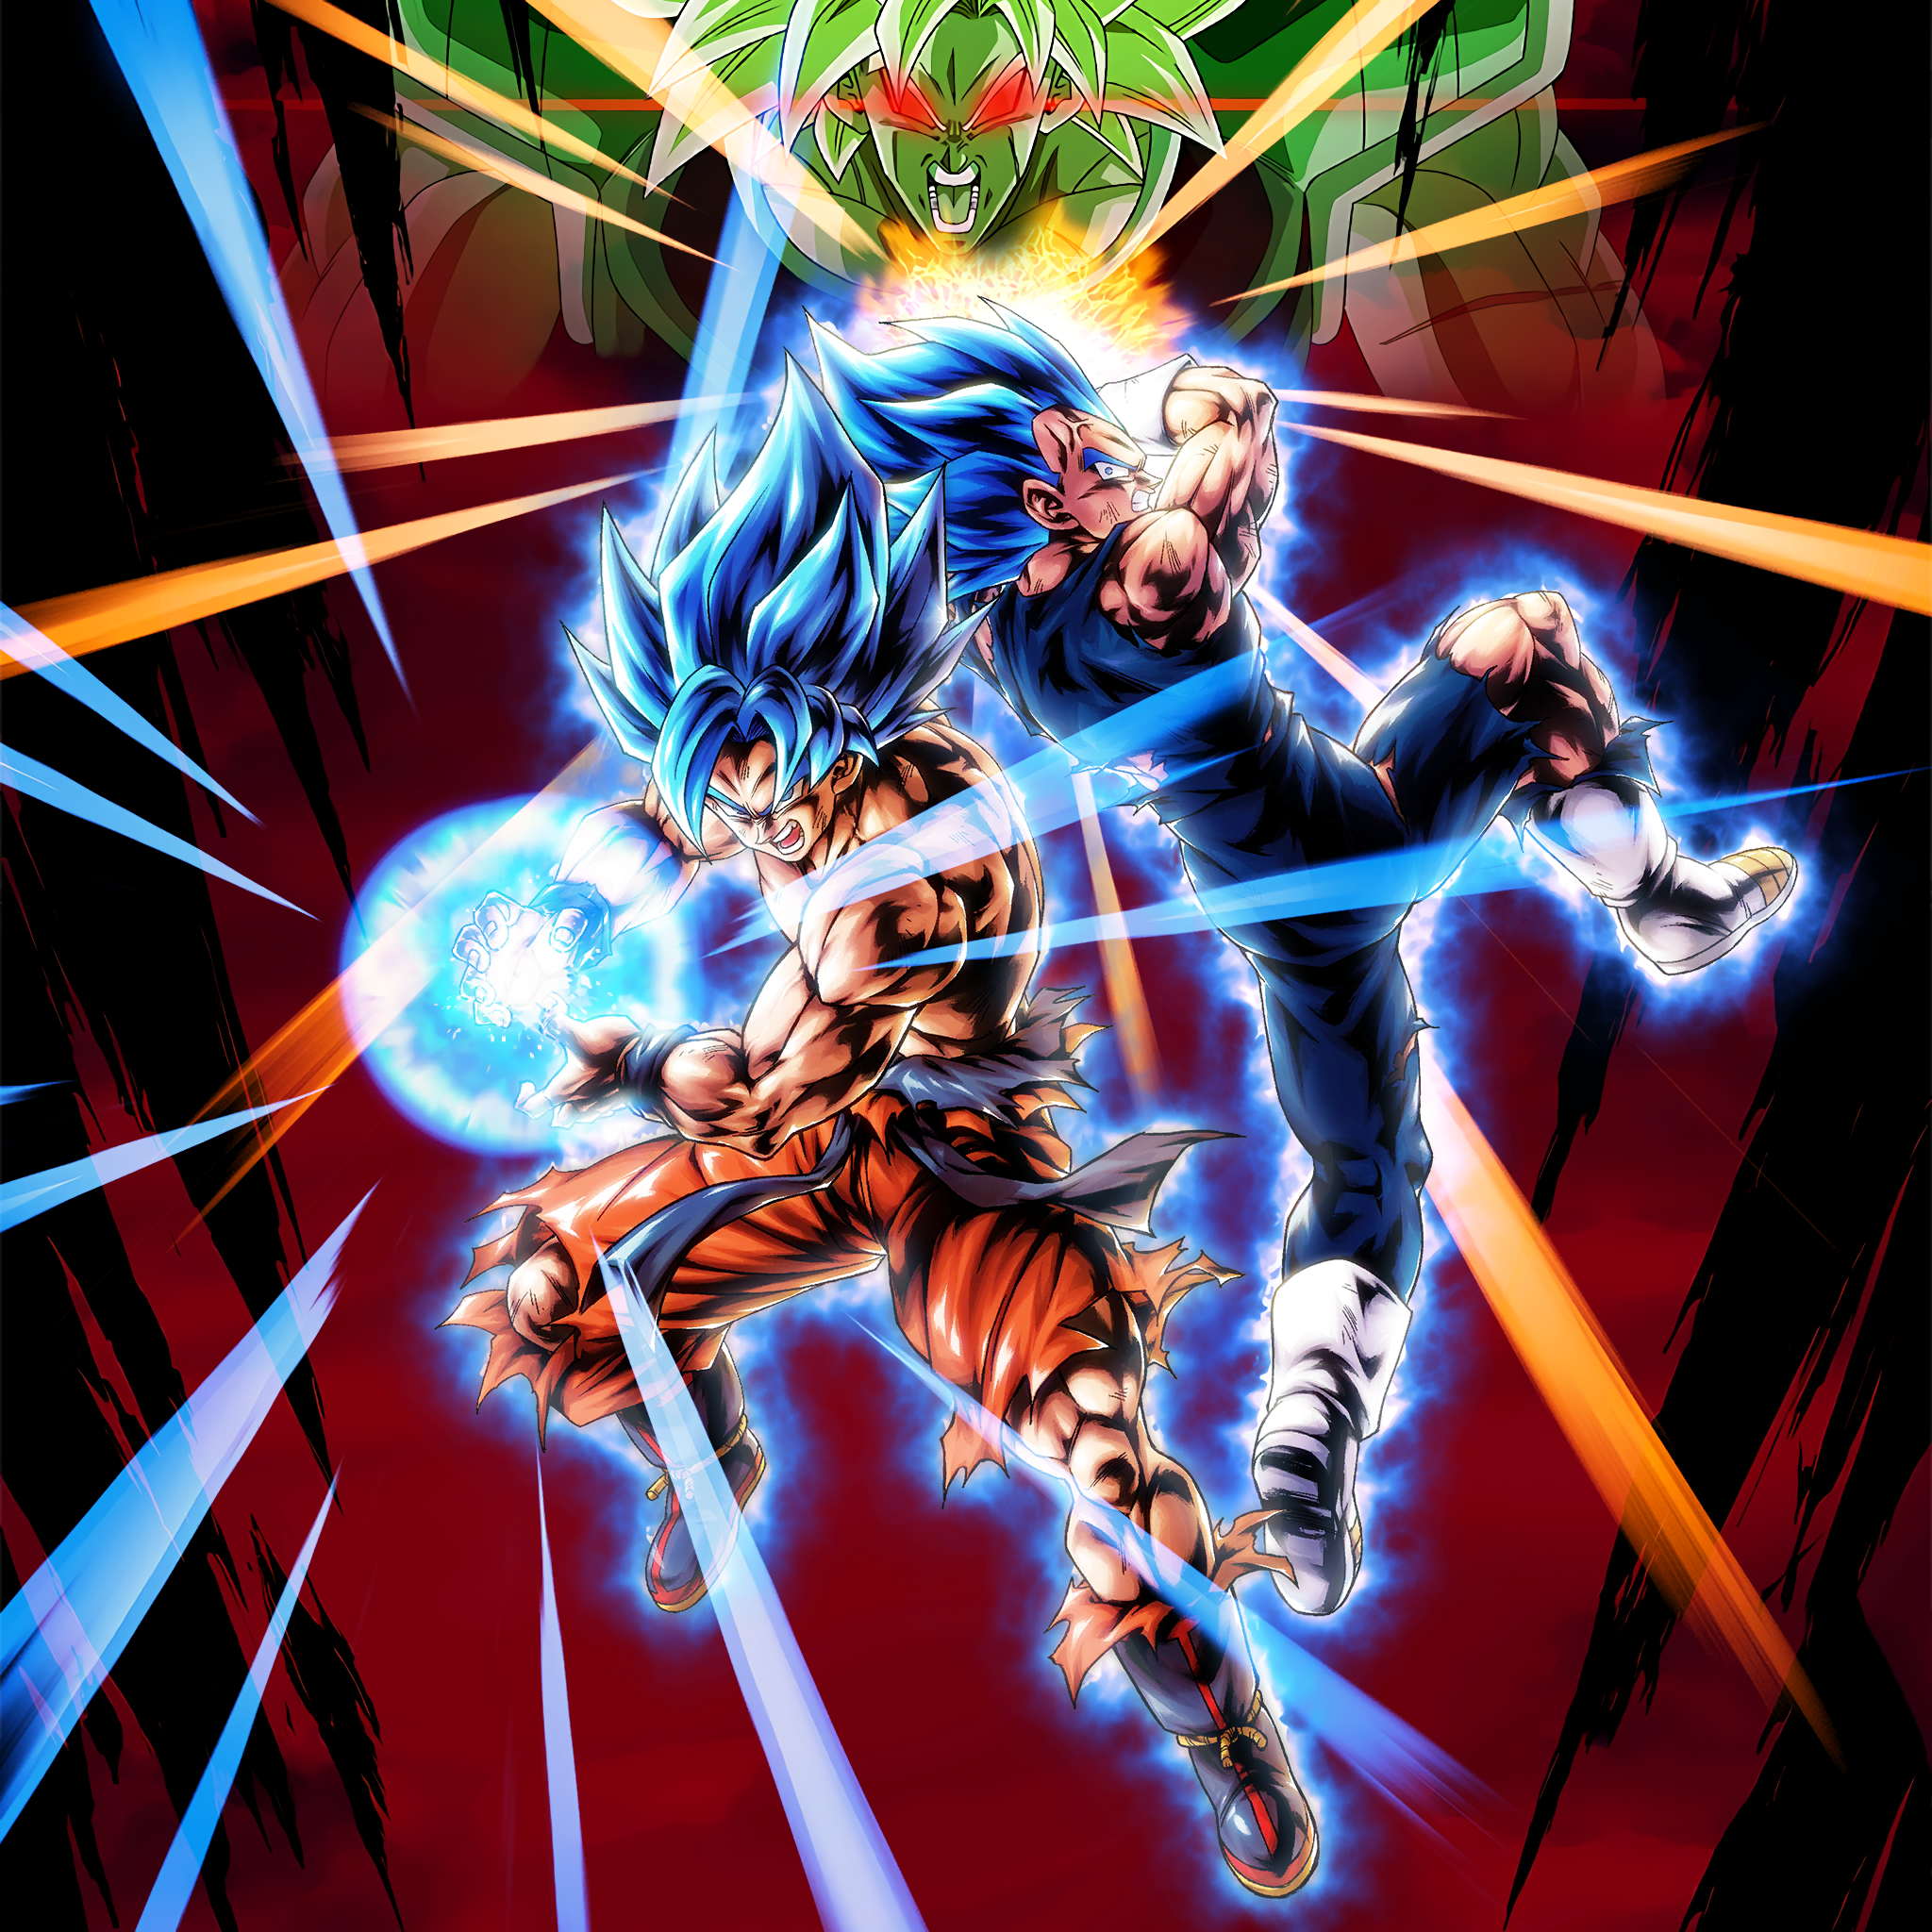 Goku - Vegeta SSGSS Wallpaper 2 [DB Legends] by Maxiuchiha22 on DeviantArt